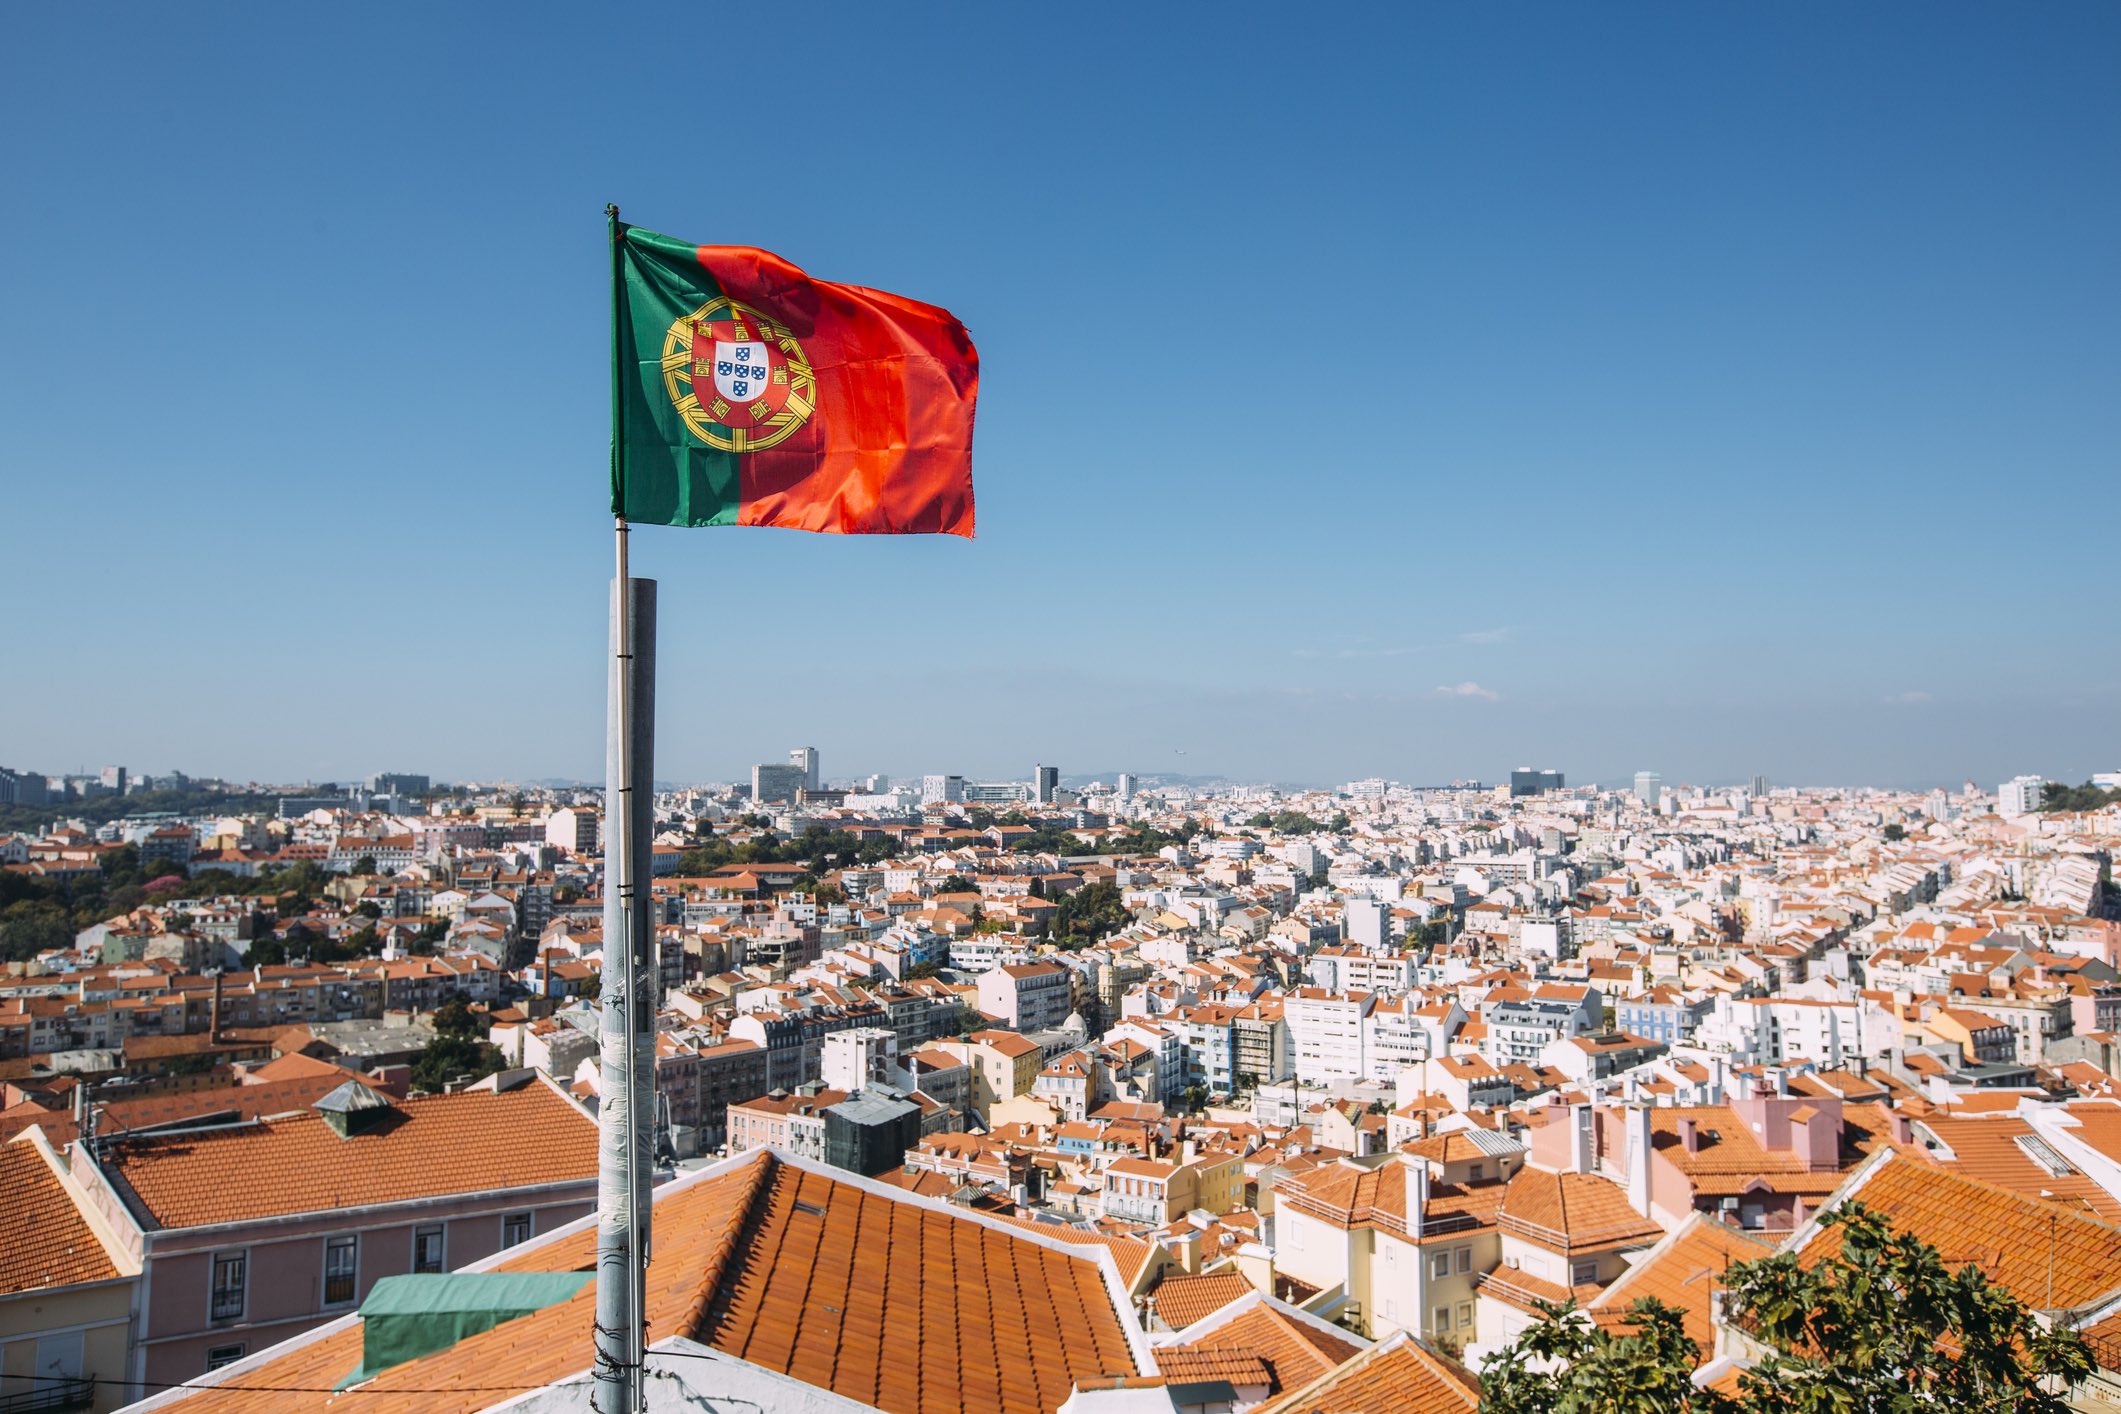 /pt/noticia/post/estudar-em-portugal-com-o-que-devo-me-preocupar-em-primeiro-lugar